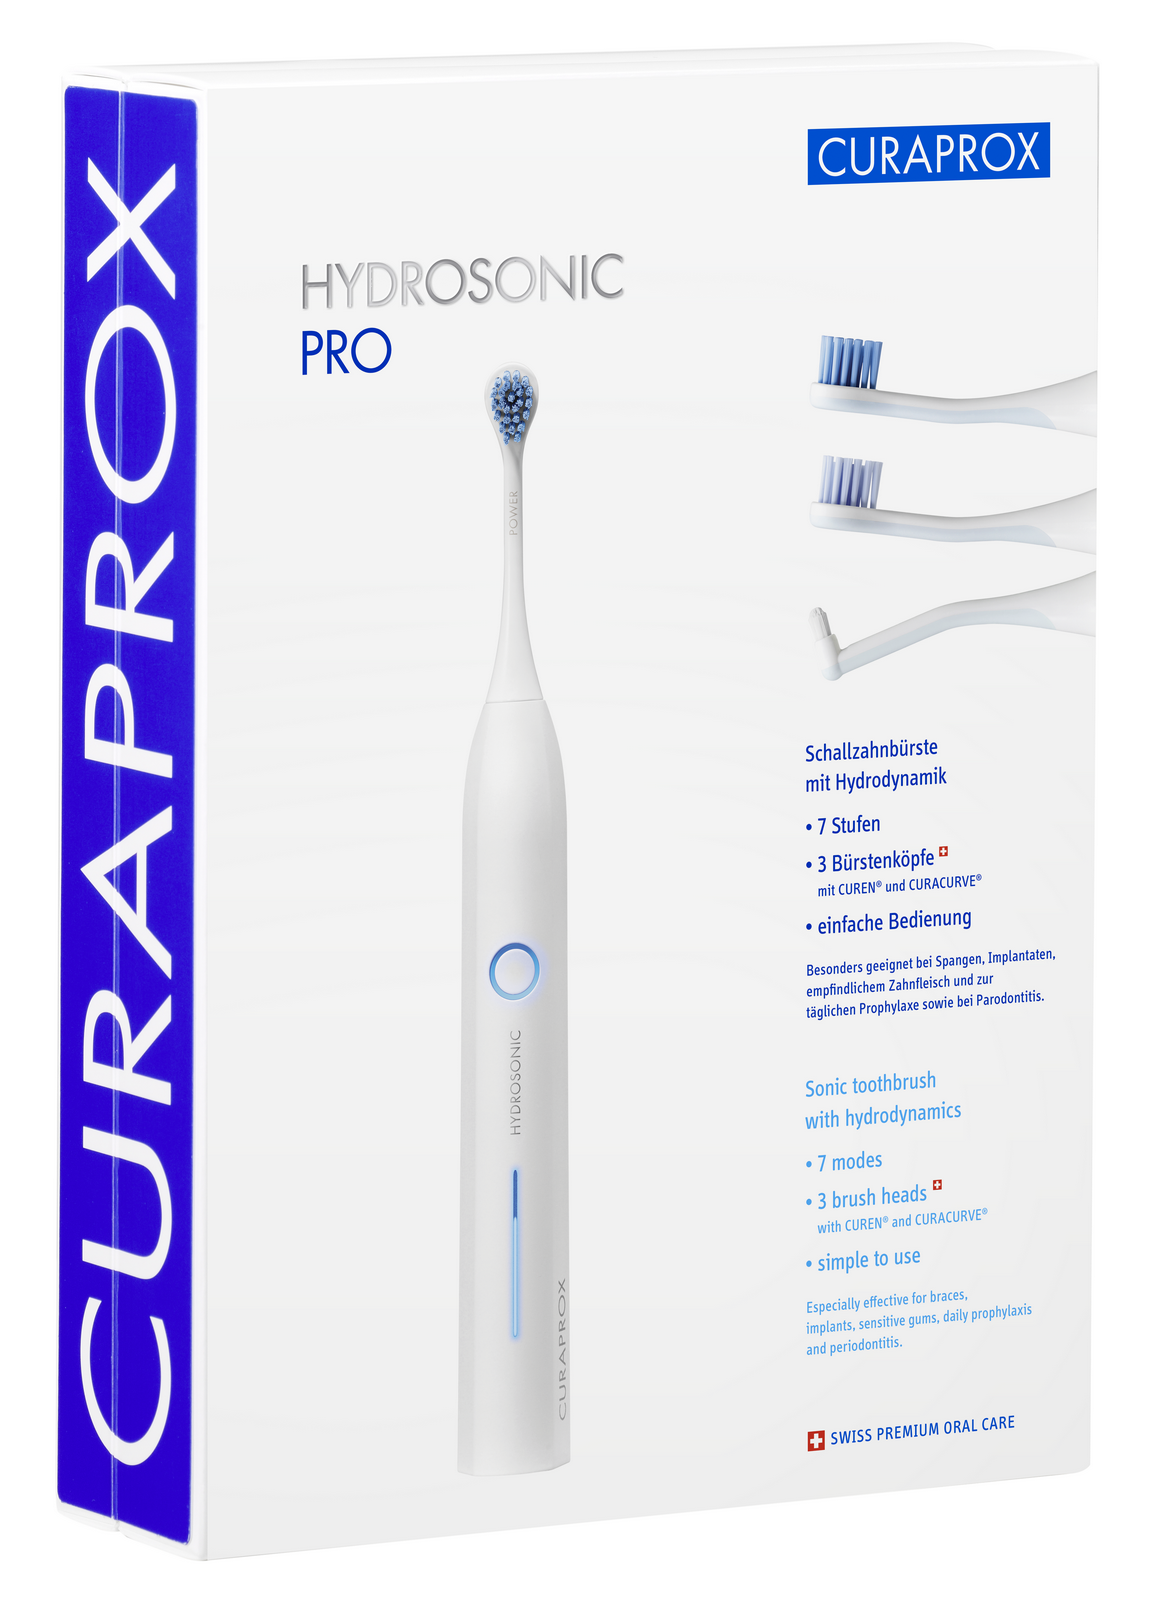 curaprox набор насадок pro power к электрической звуковой зубной щетке hydrosonic pro CURAPROX Щетка зубная звуковая, в наборе / Hydrosonic Pro